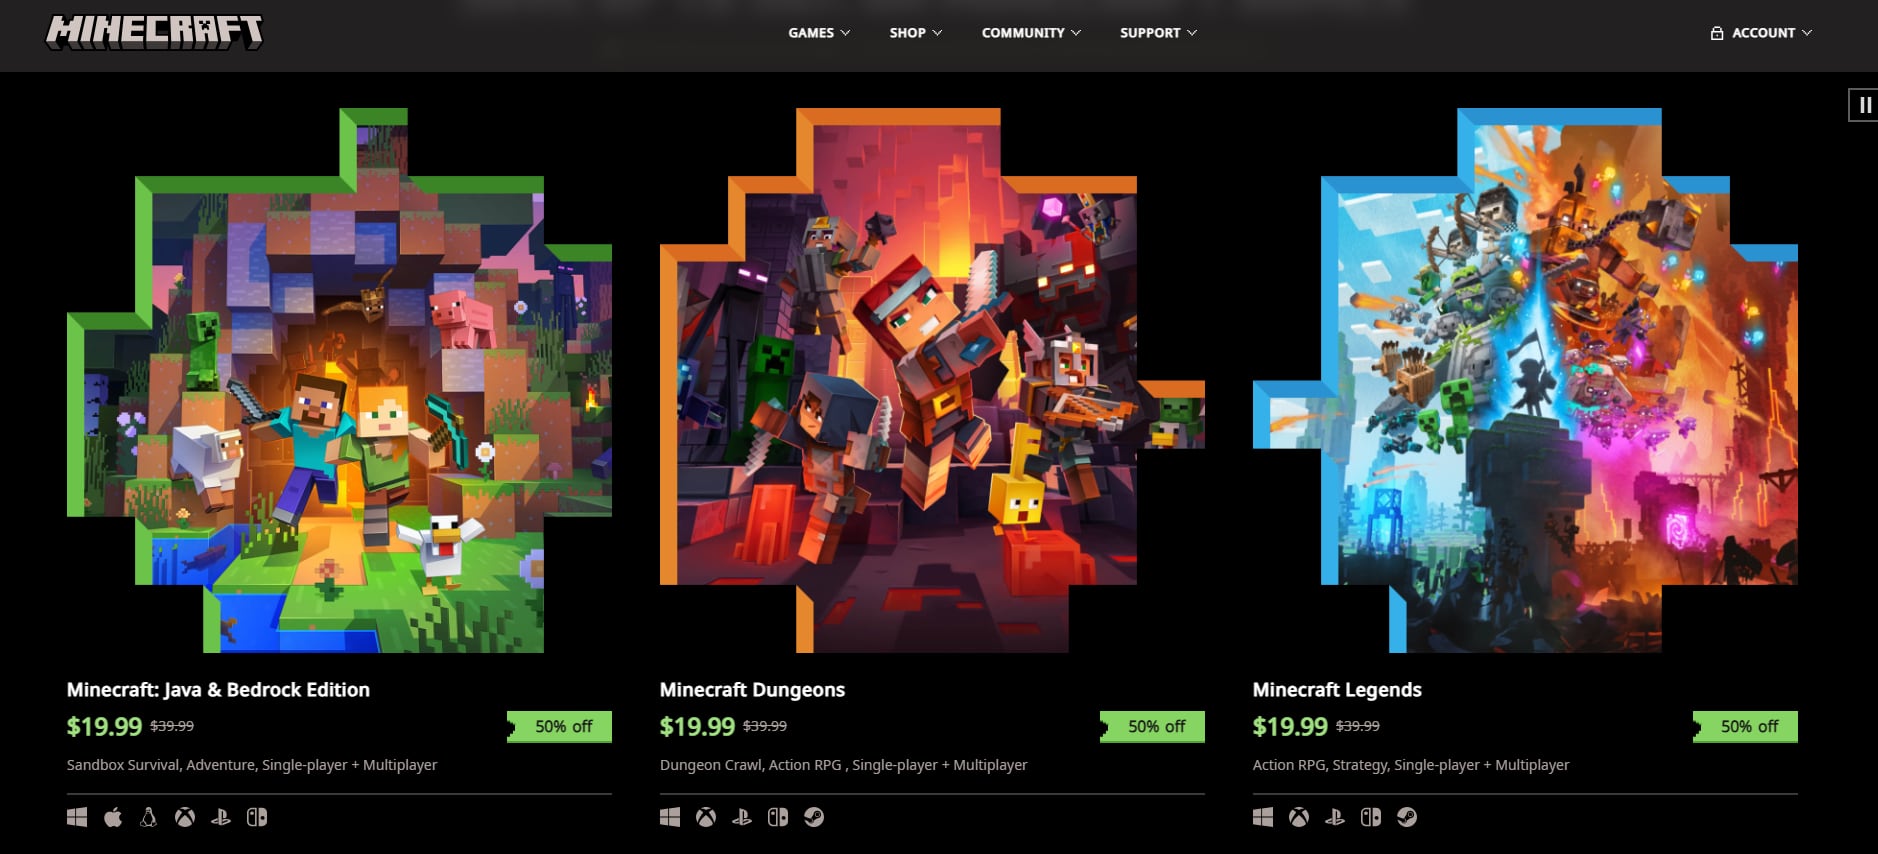 El juego se encuentra disponible en diversidad de sistemas operativos y consolas. (Minecraft)